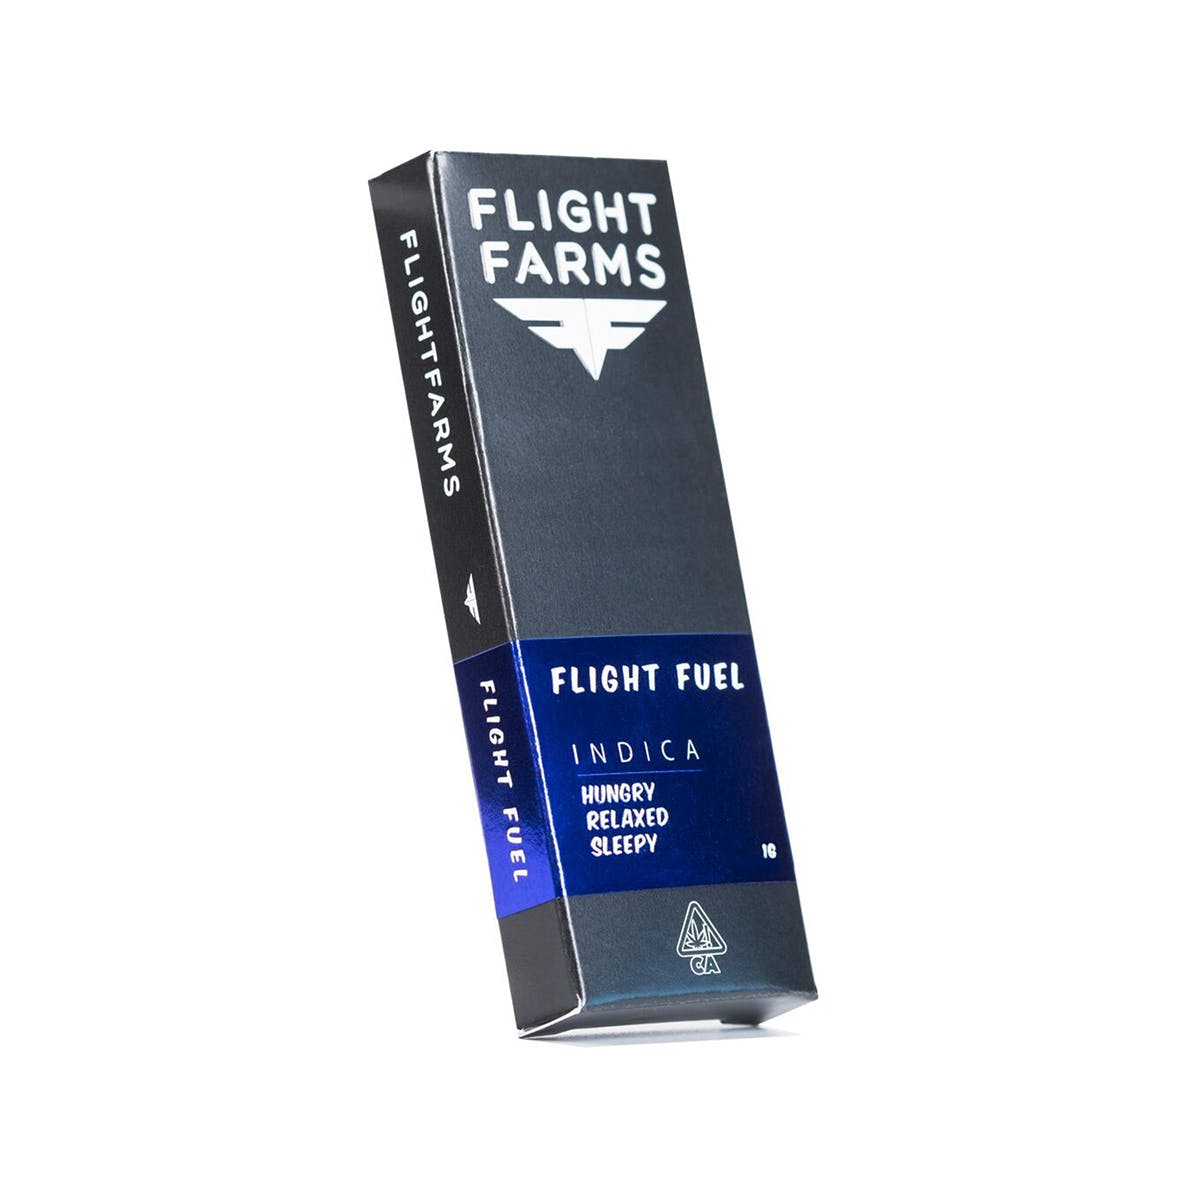 FLIGHT FARMS F6 Cartridge - Flight Fuel 1000mg